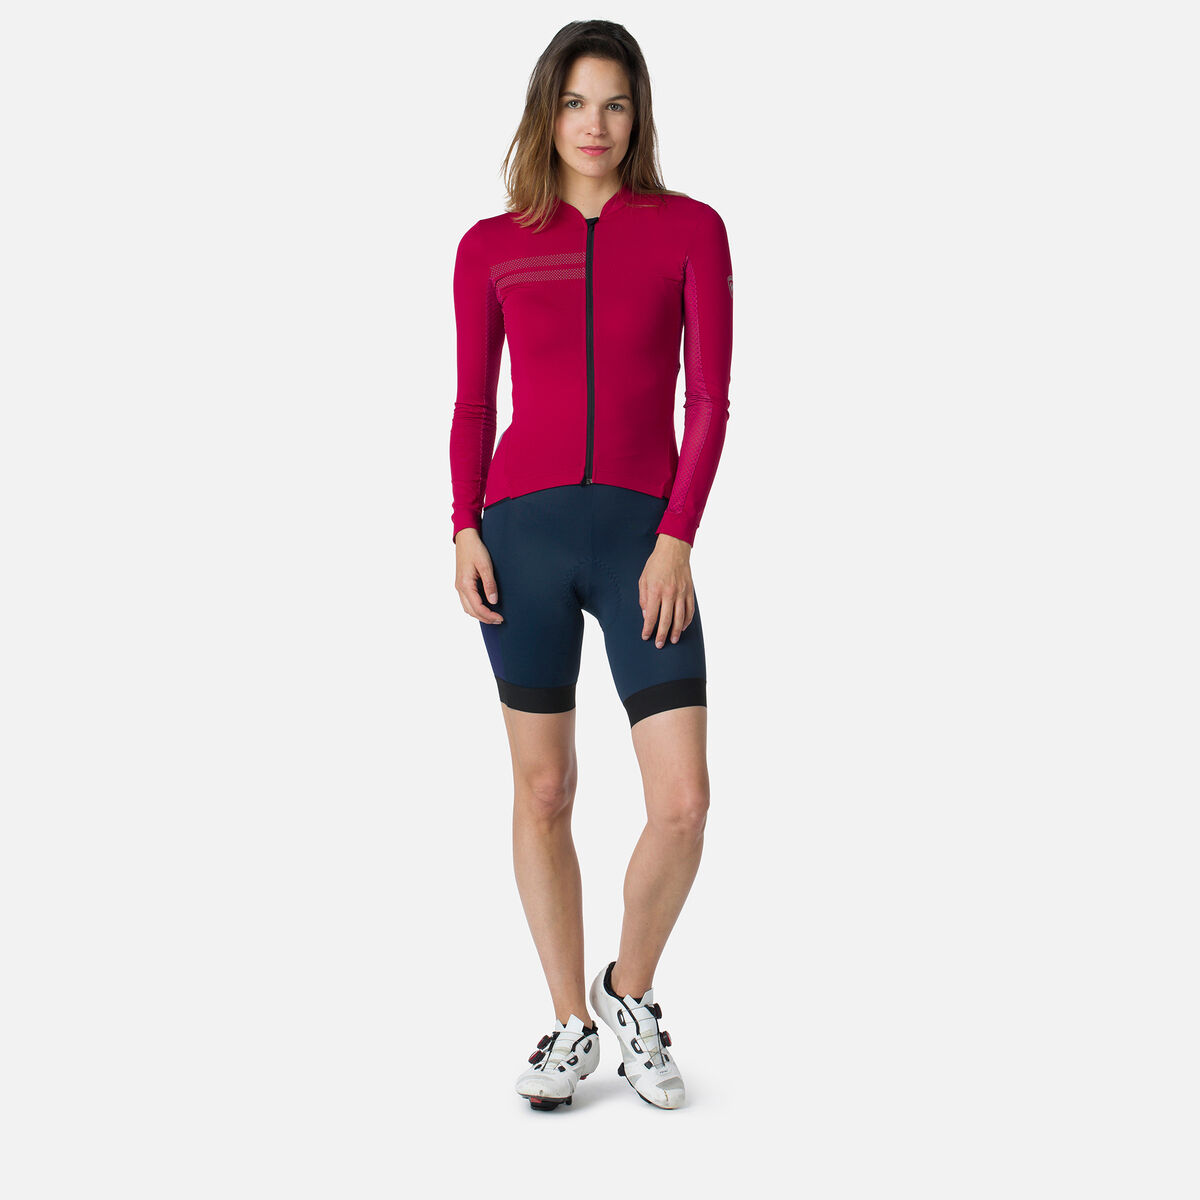 Rossignol Women's Cycling Bib Shorts, Trousers Women